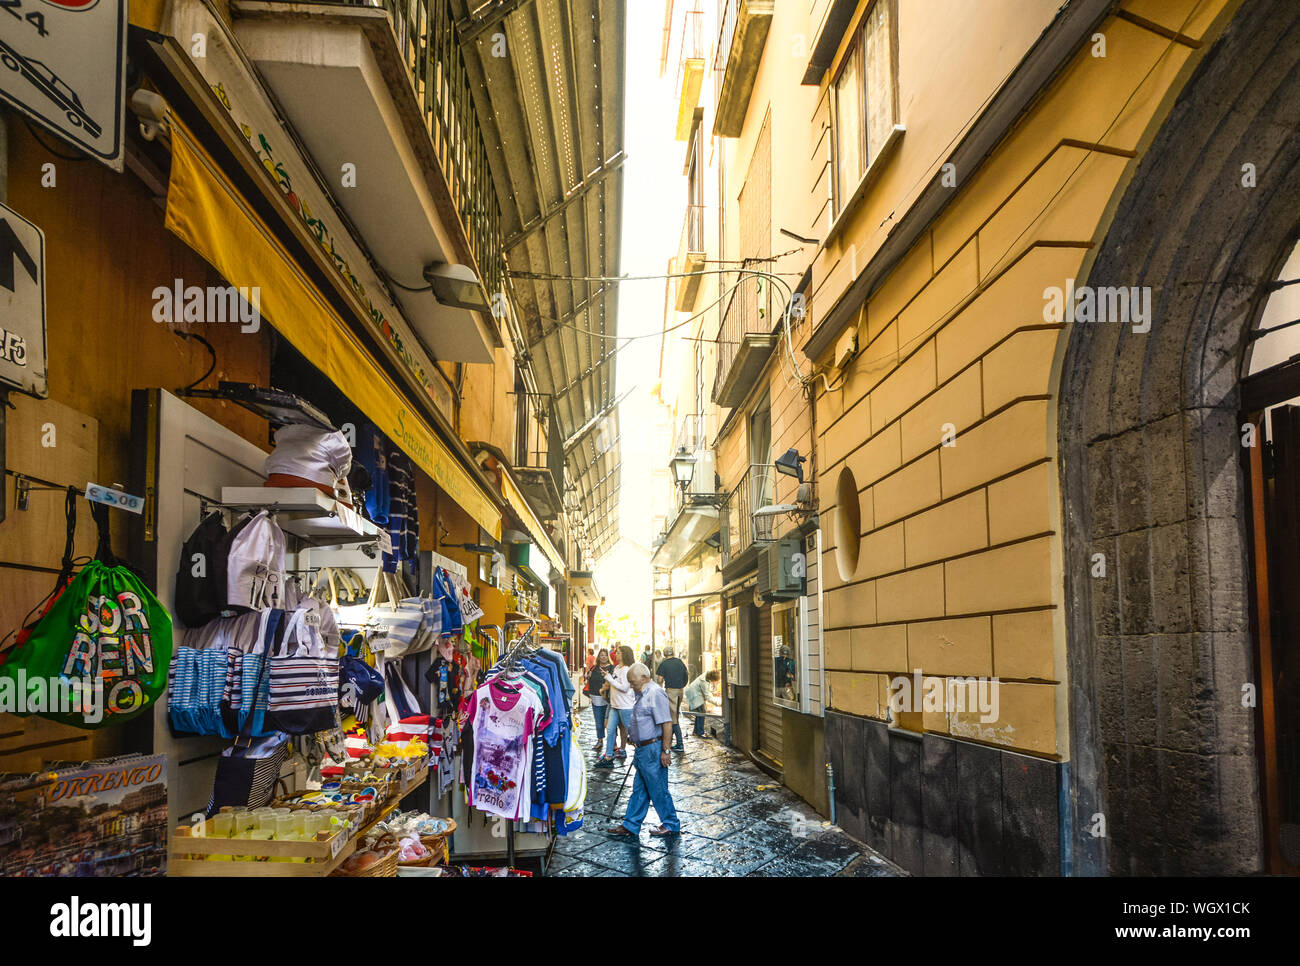 Eine schmale Gasse in Sorrent Italien mit einem Markt im freien Verkauf Geschenke und Souvenirs als Touristen und Einheimischen shop Stockfoto